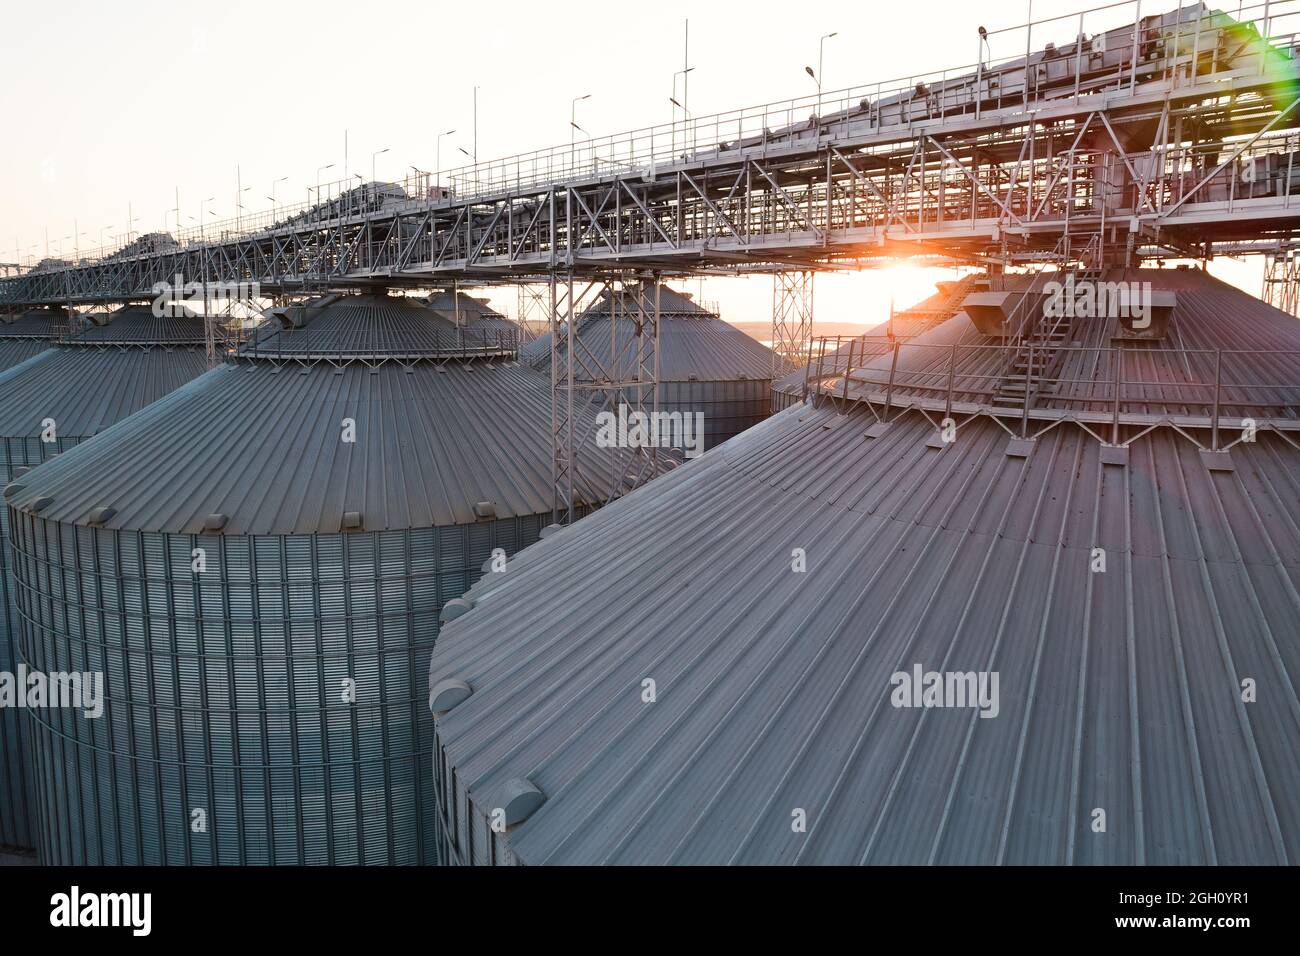 Getreideterminals des modernen Handelshafens. Silos zur Lagerung von Getreide in Strahlen untergehenden Sonnenlichtes, Draufsicht vom Quadcopter. Industrieller Hintergrund. Logist Stockfoto